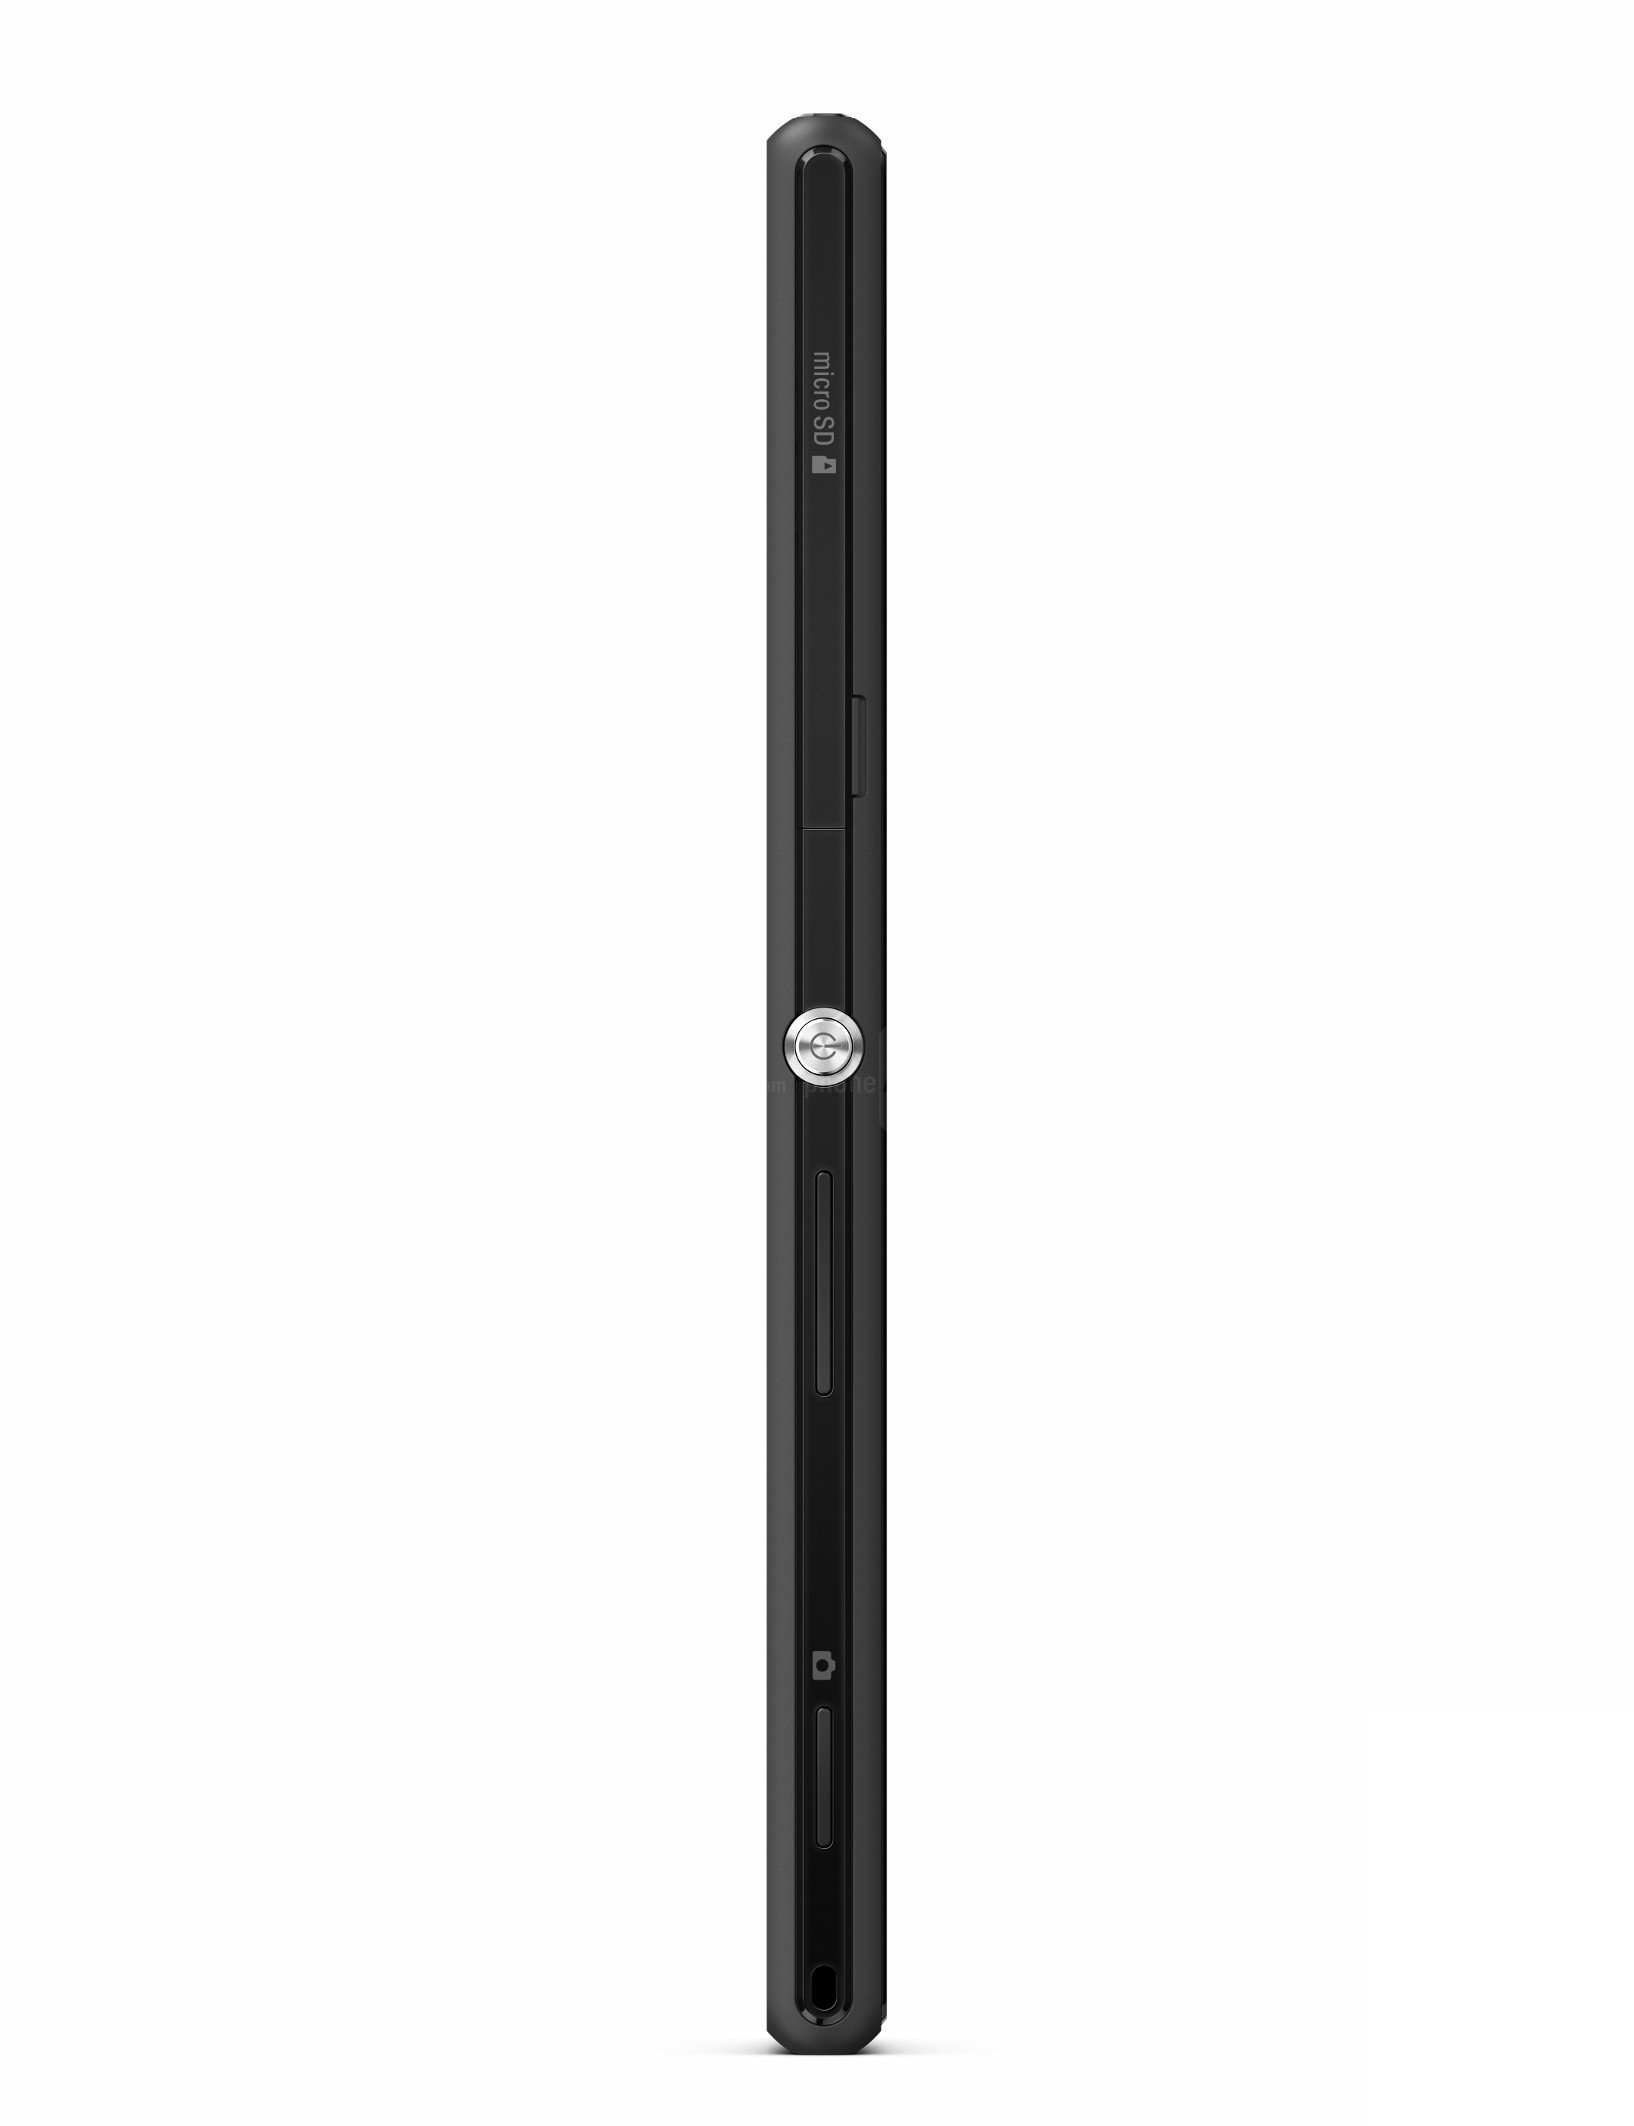 Sony Xperia M2 Dane Techniczne Opinie Recenzja Phonesdata